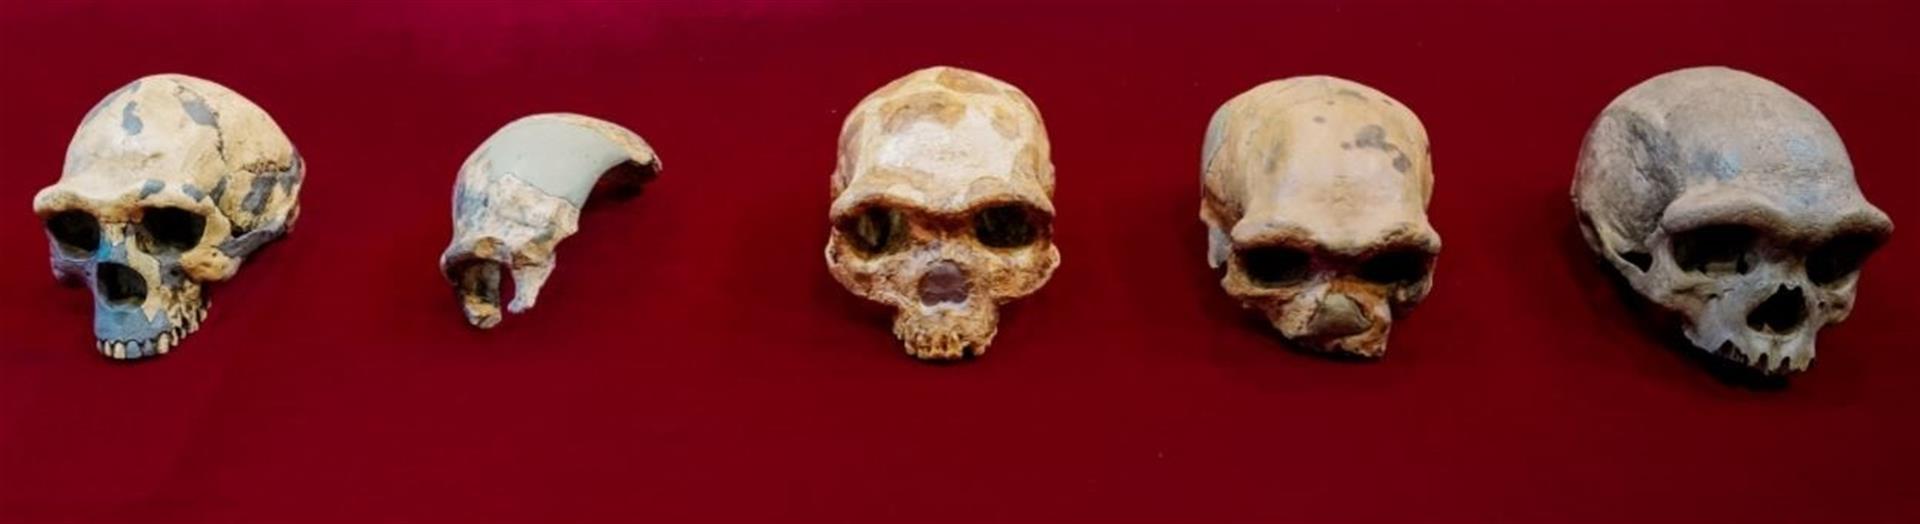 El cráneo de Harbin, uno de los fósiles humanos mejor conservados del mundo que acaba de ser estudiado